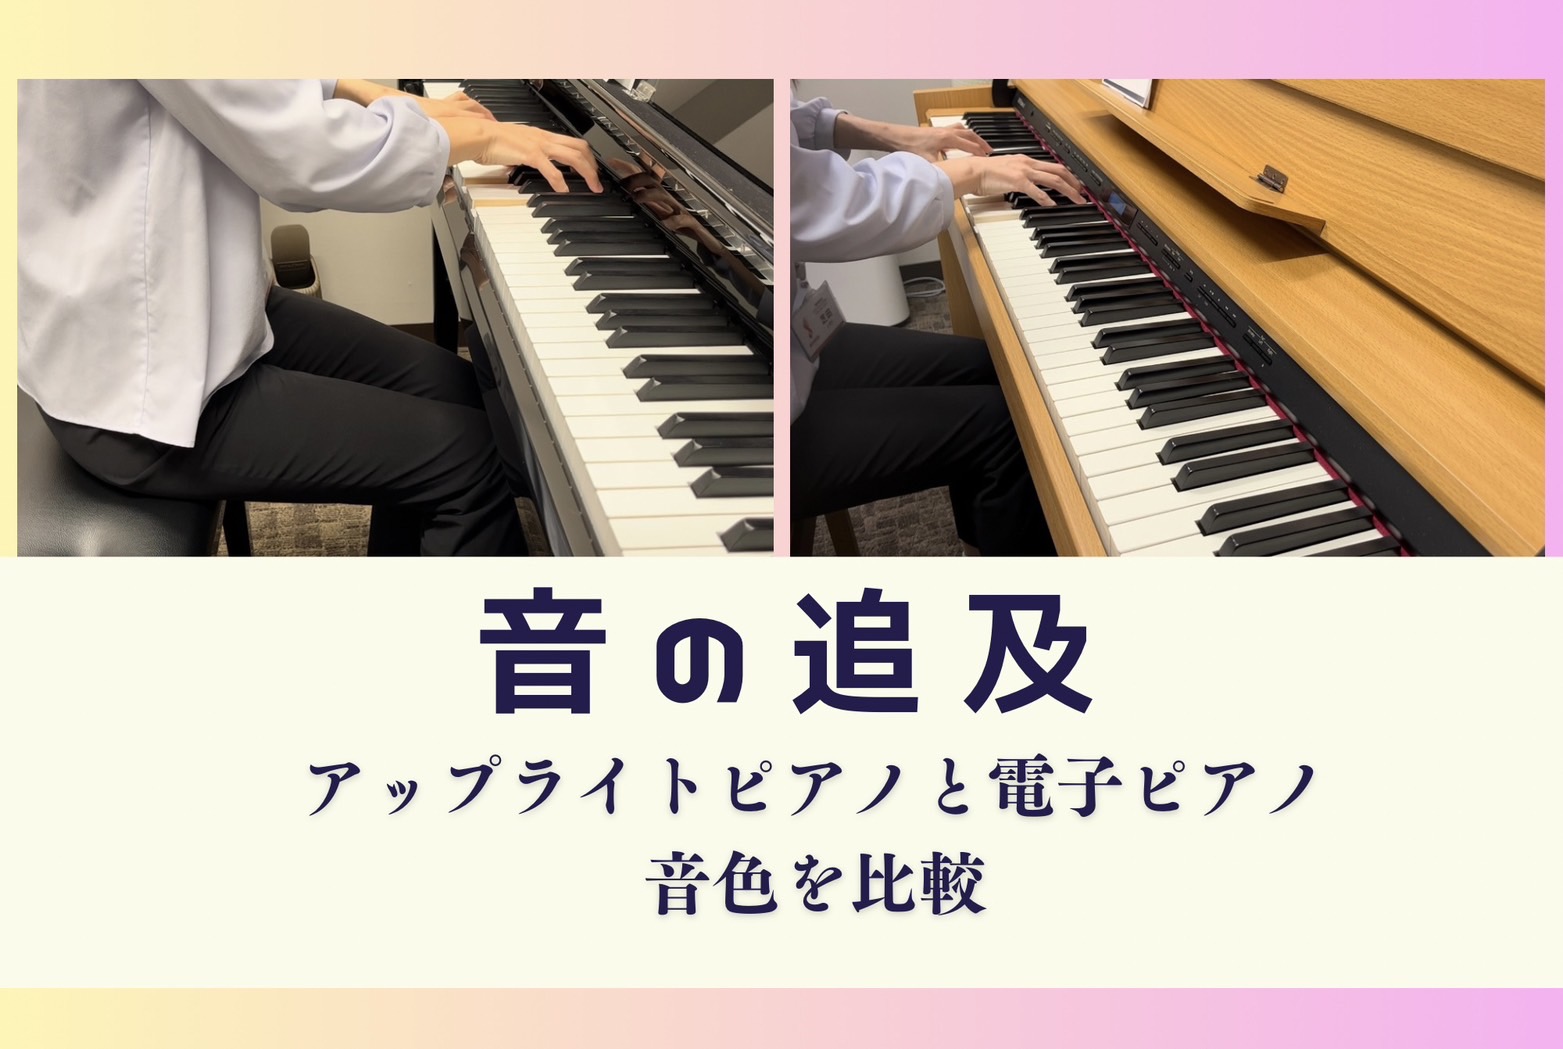 皆さまこんにちは！ピアノインストラクターの芝田佳子(しばたかこ)です。 10月に入りだいぶ肌寒くなり、寒がりな私はもうヒートテックを着込んでます（笑）今年は暖冬とニュースで見て少し嬉しく思っています。今回は5回目のブログということでピアノを演奏する上での❝音の追及❞について記事を書いていきます。音楽 […]